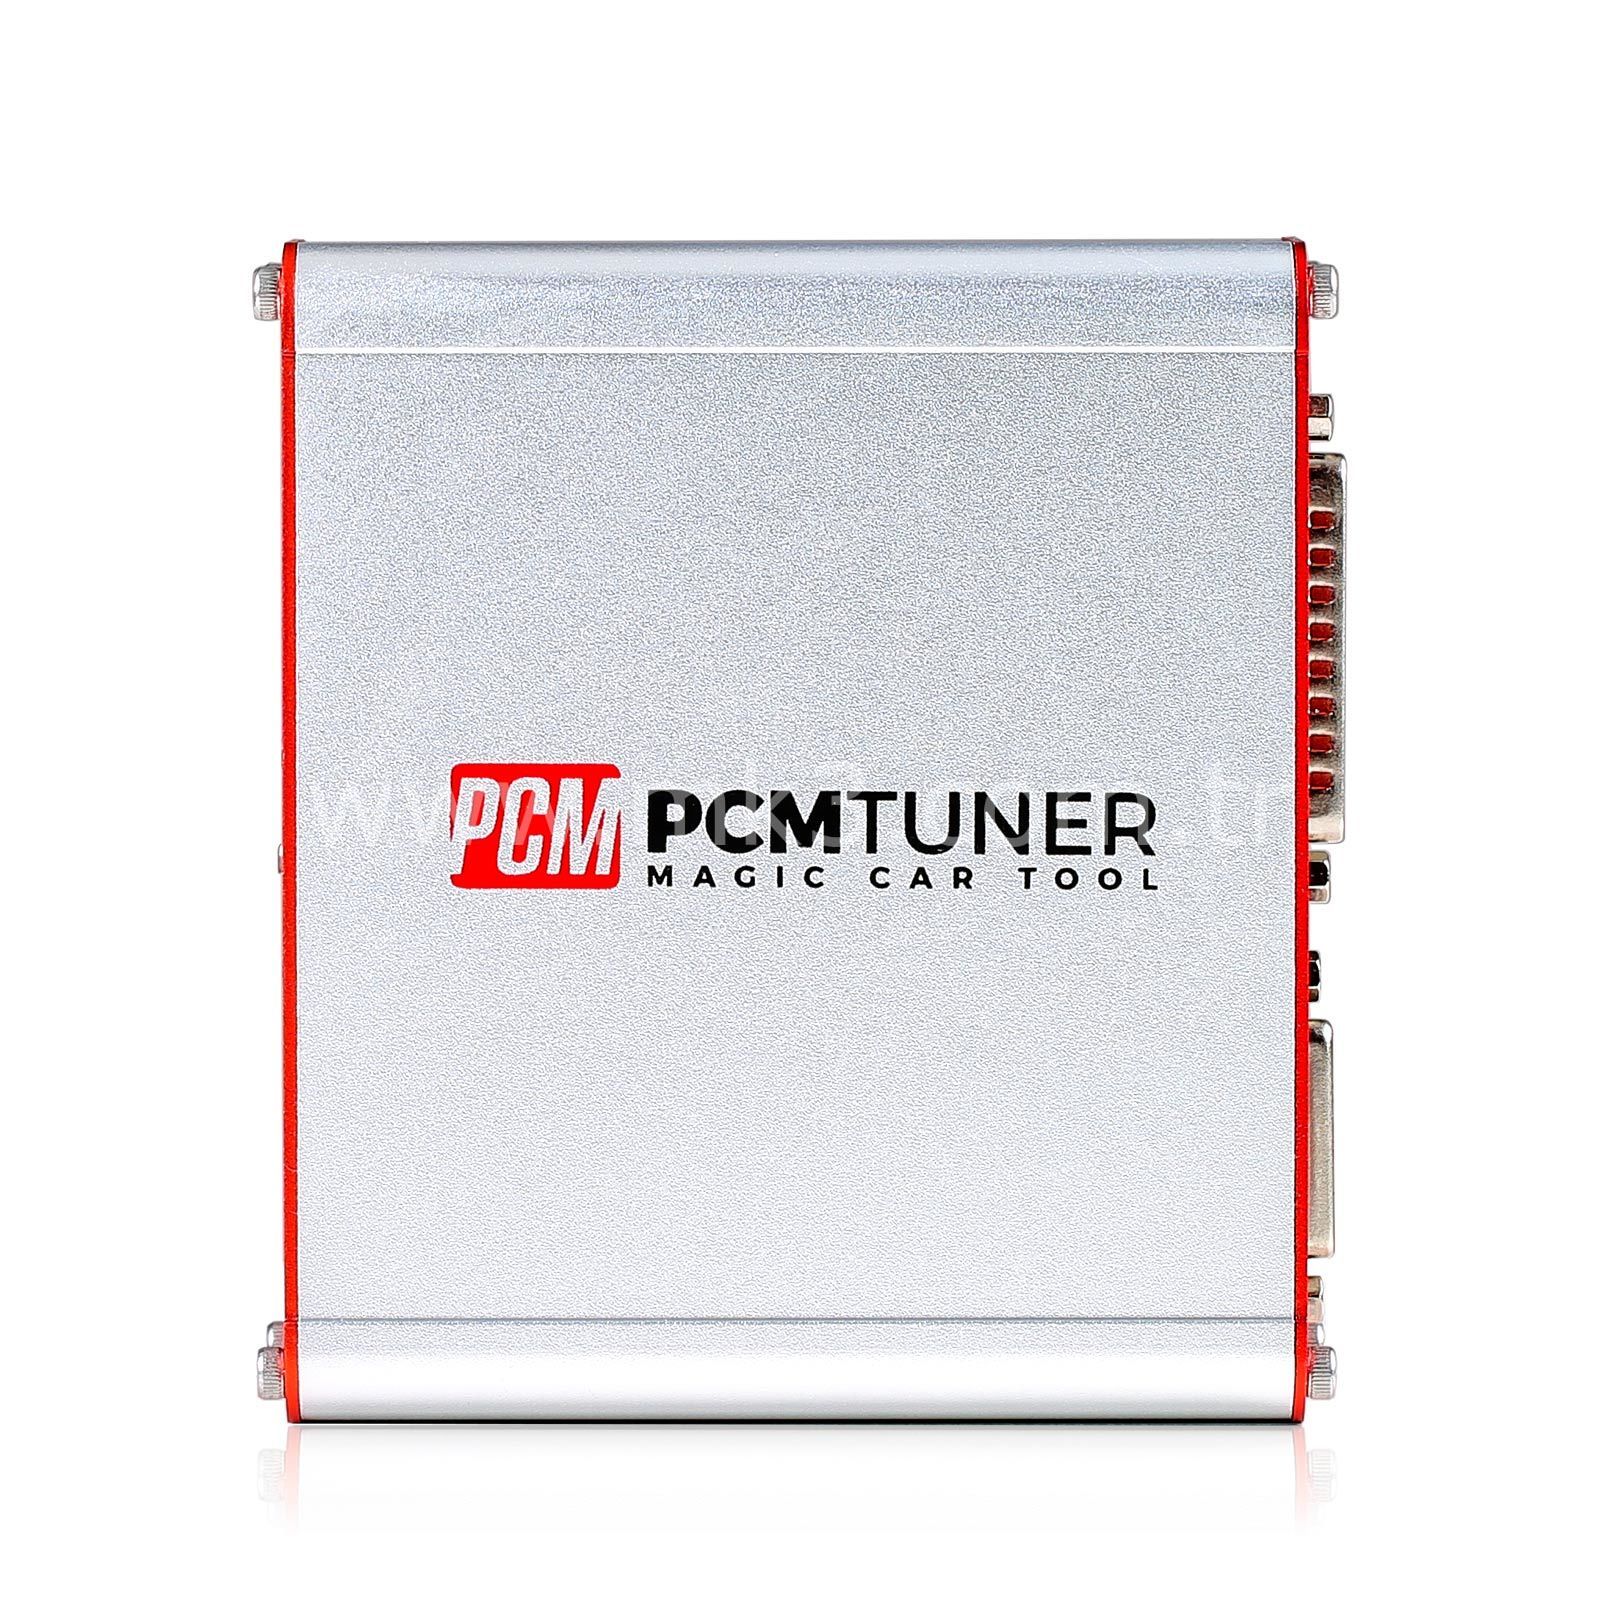 67 Modüllü PCMtuner V1.25 ECU Programlayıcı